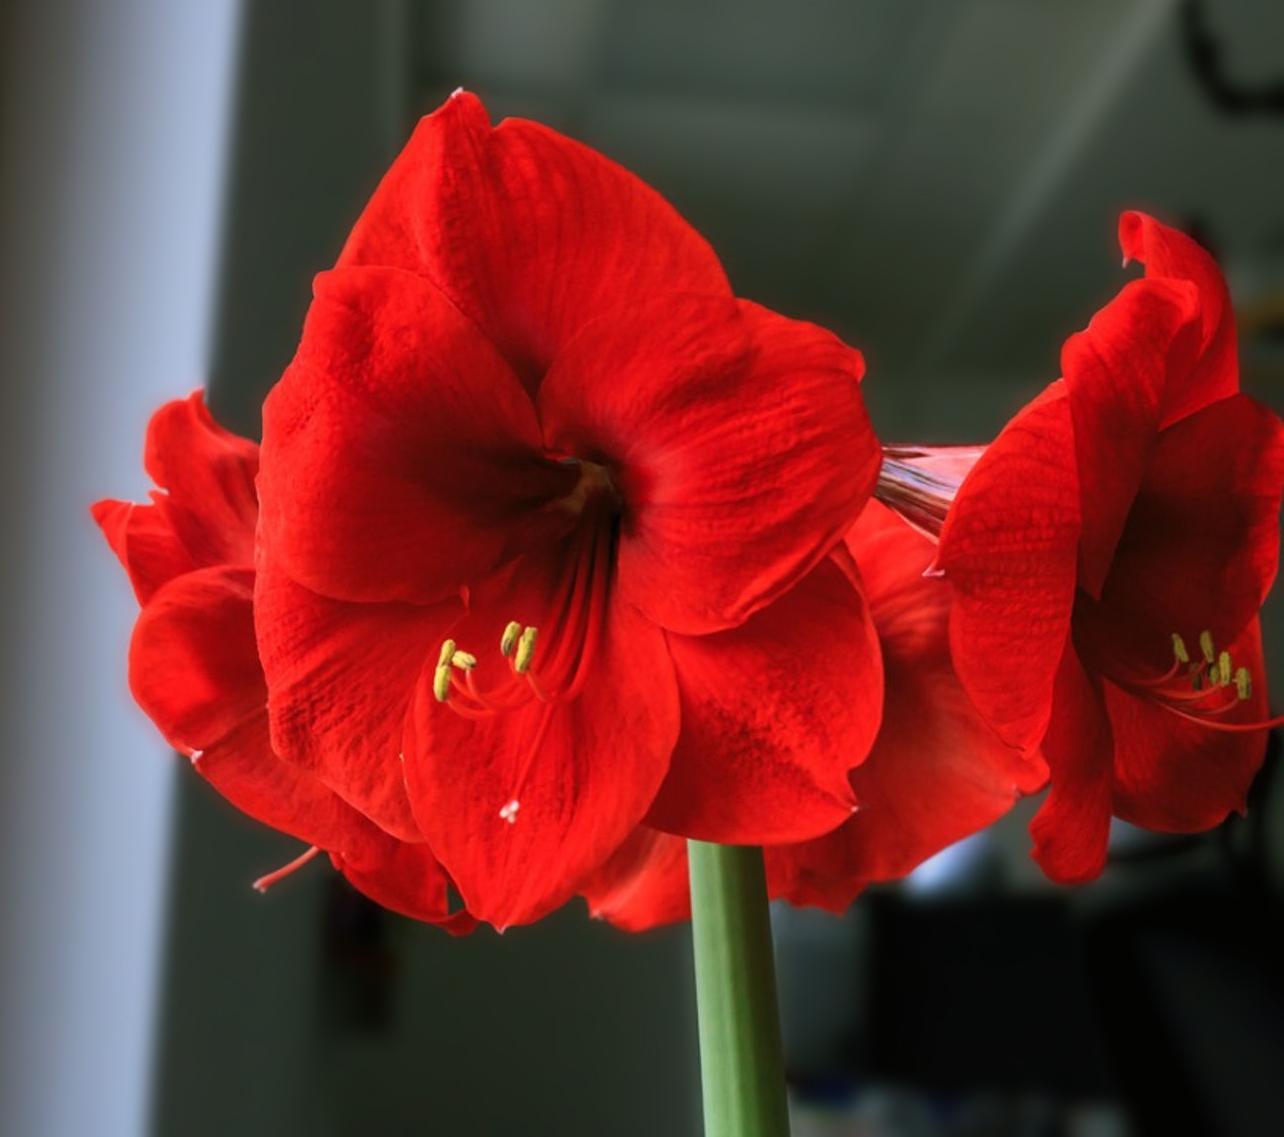 Hoa loa kèn có ý nghĩa gì? Cách trồng và chăm sóc giúp hoa nở đẹp - 6